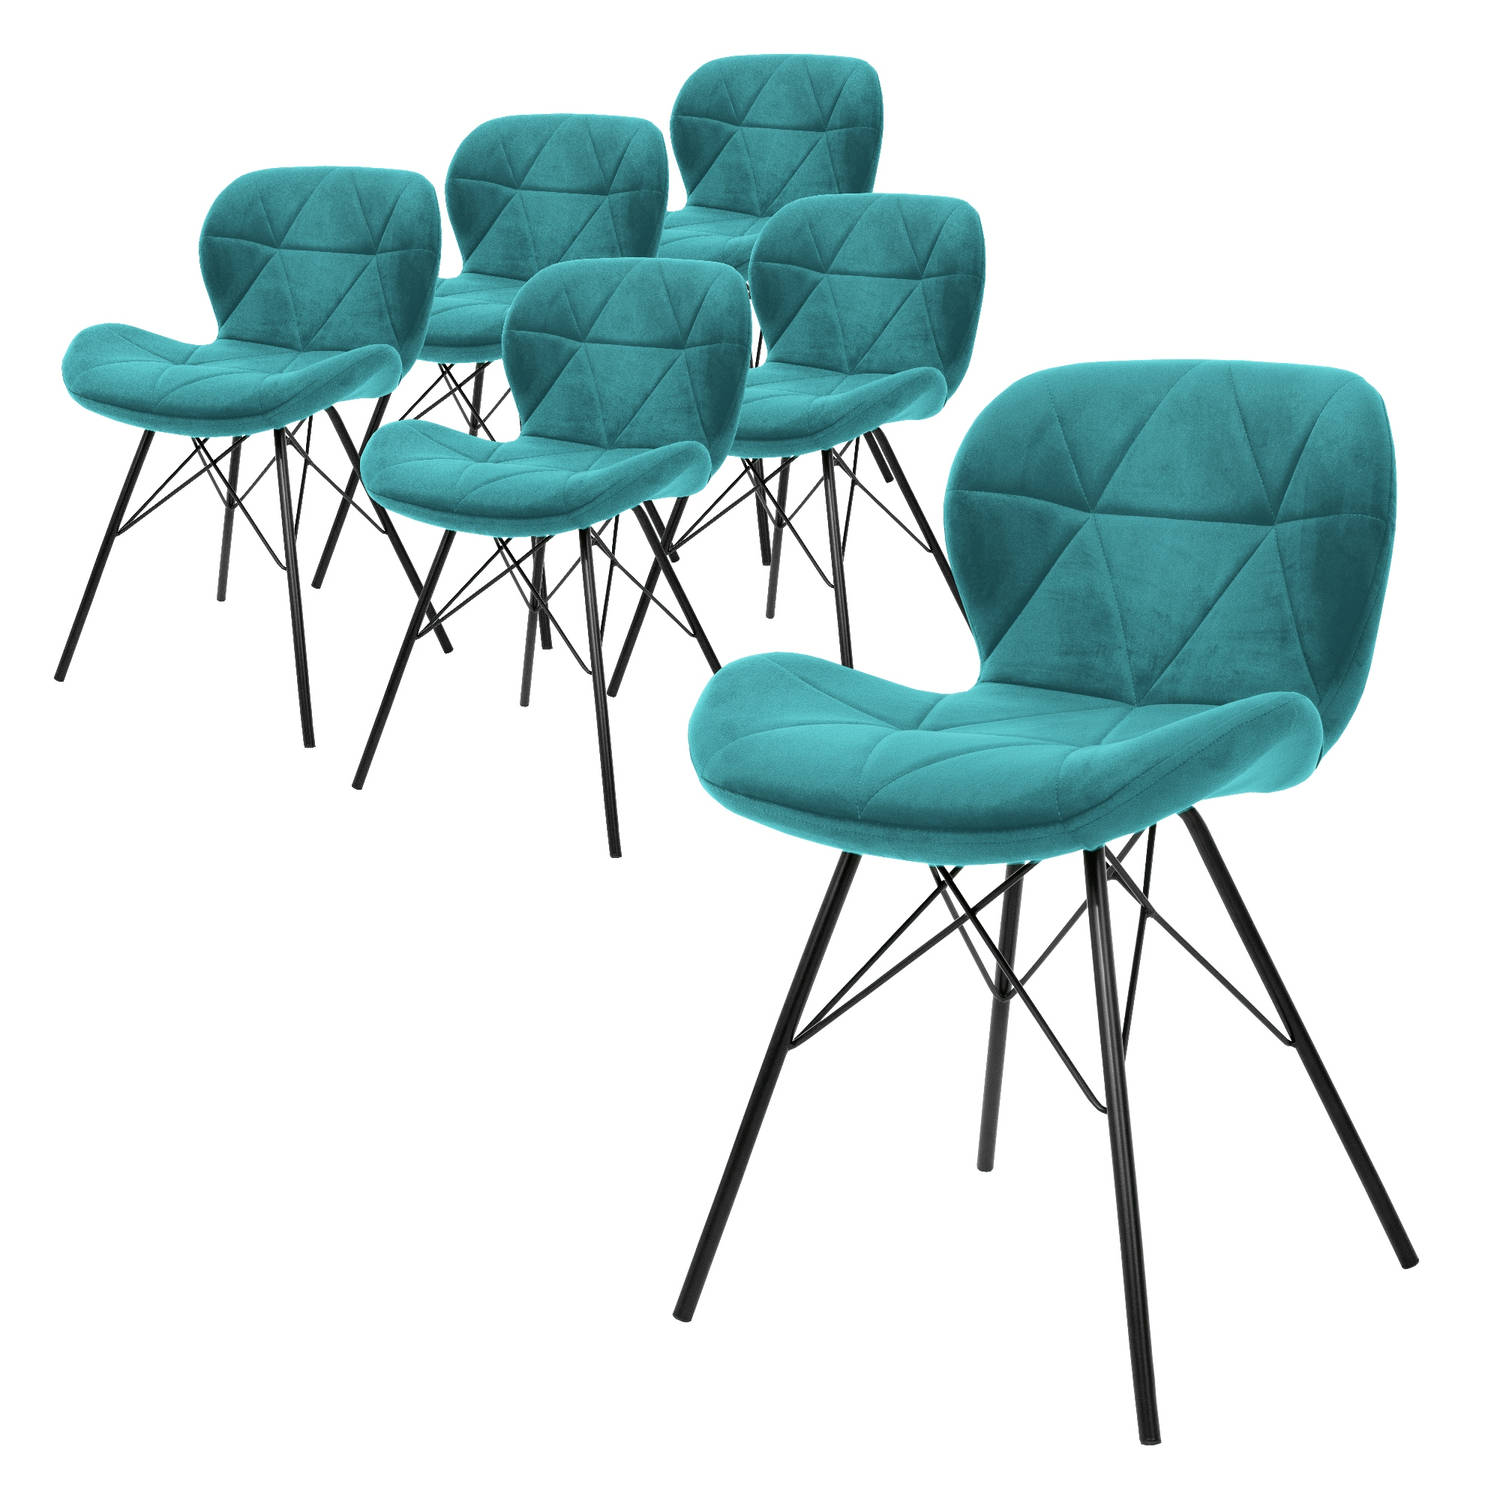 ML-Design Set van 6 eetkamerstoelen met rugleuning, turquoise, keukenstoel met fluwelen bekleding, gestoffeerde stoel met metalen poten, ergonomische stoel voor eettafel, woonkamer